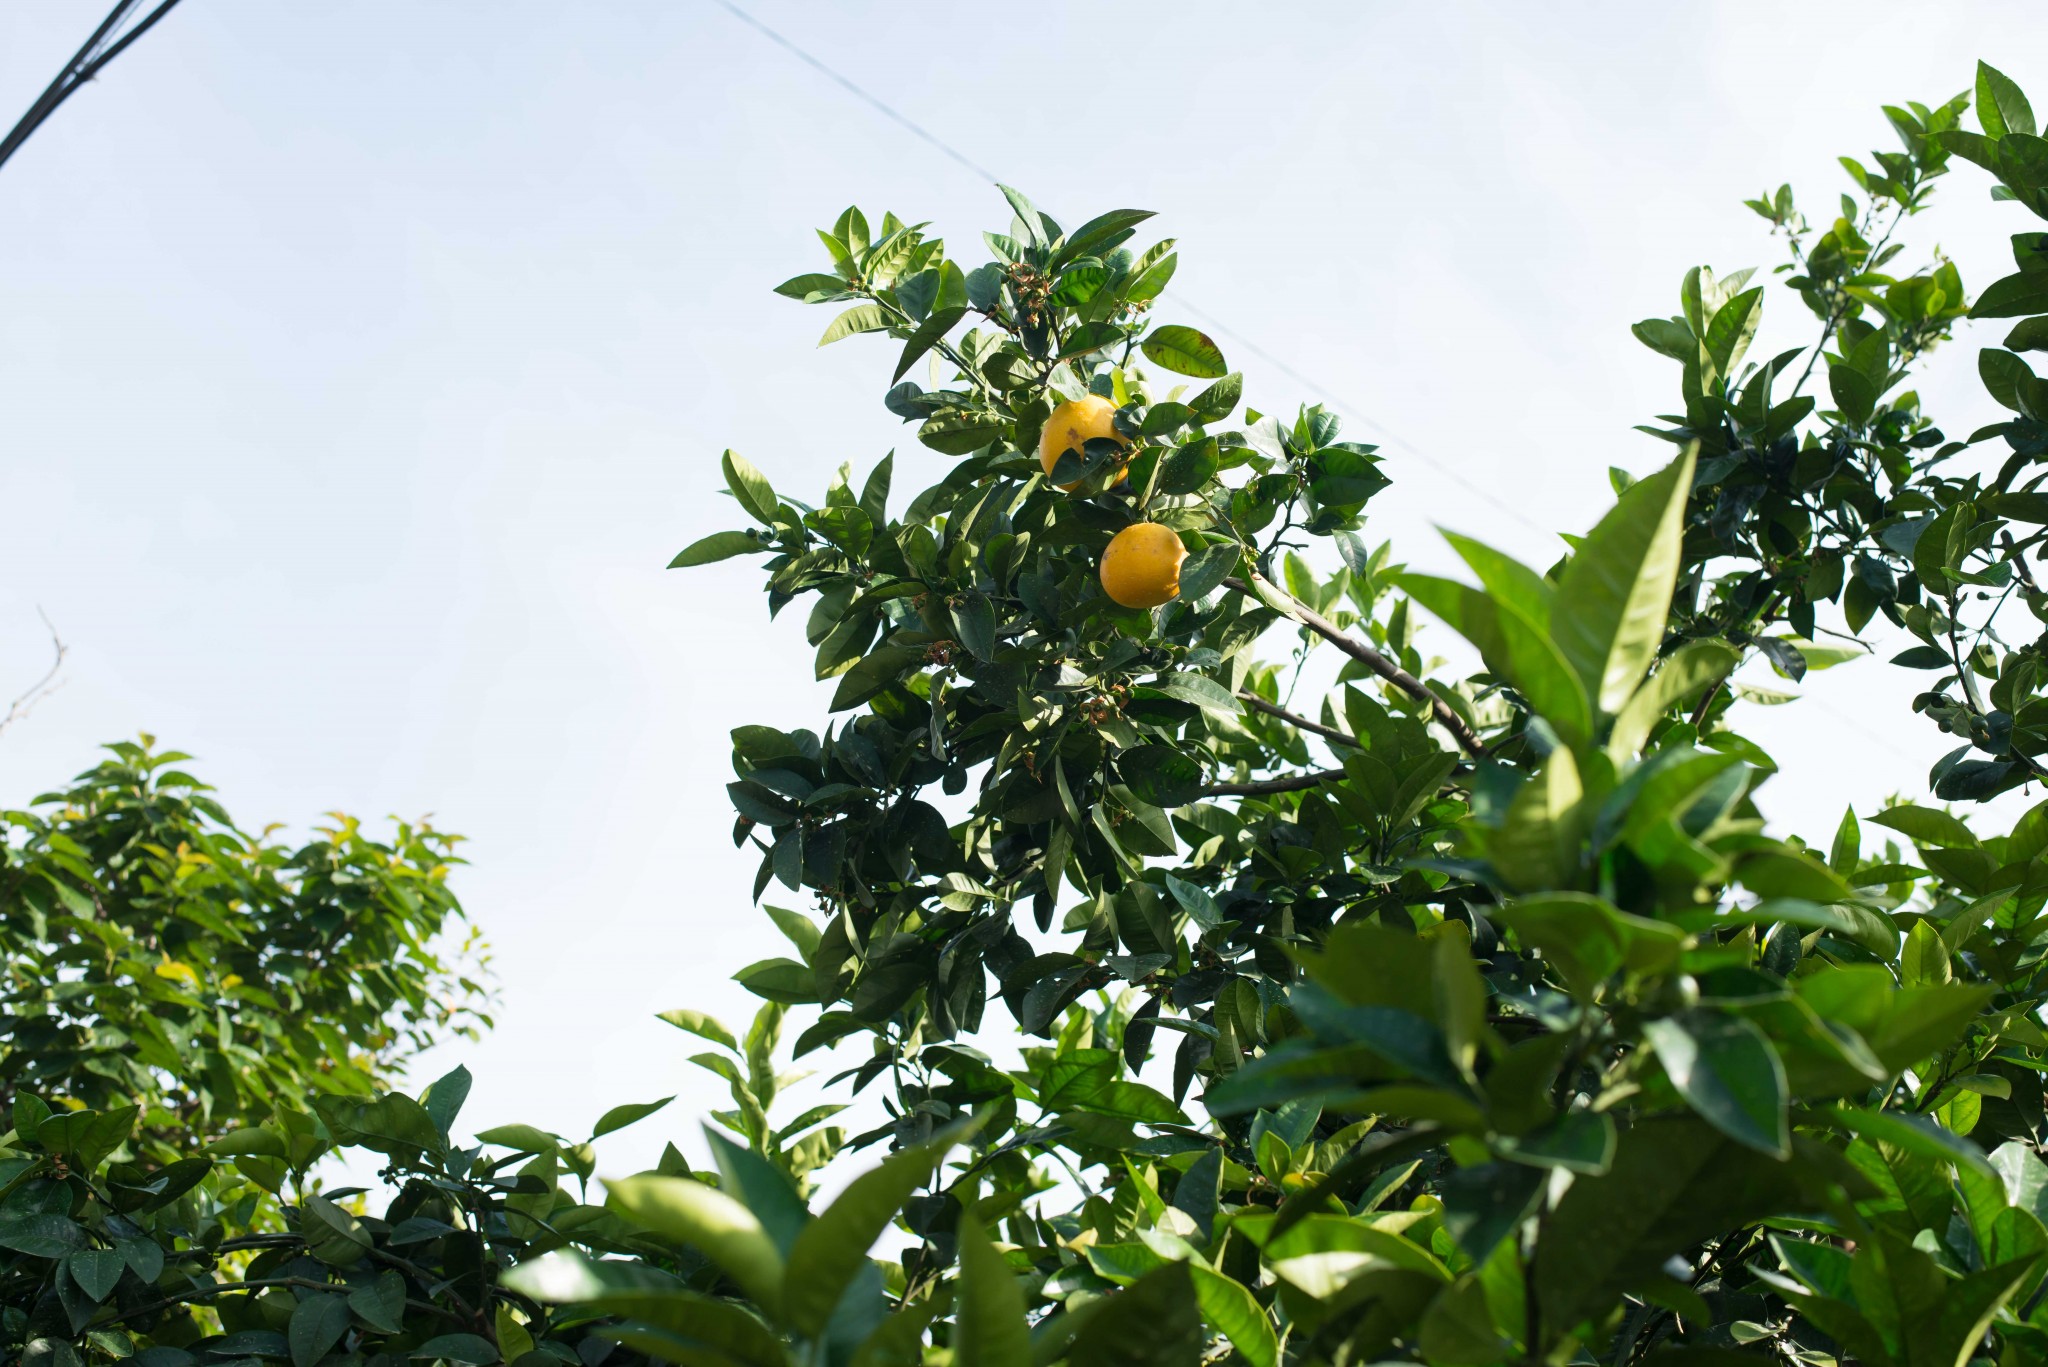 取材時は、「和製グレープフルーツ」といわれる「宇和ゴールド」が、収穫時期を迎えていました。